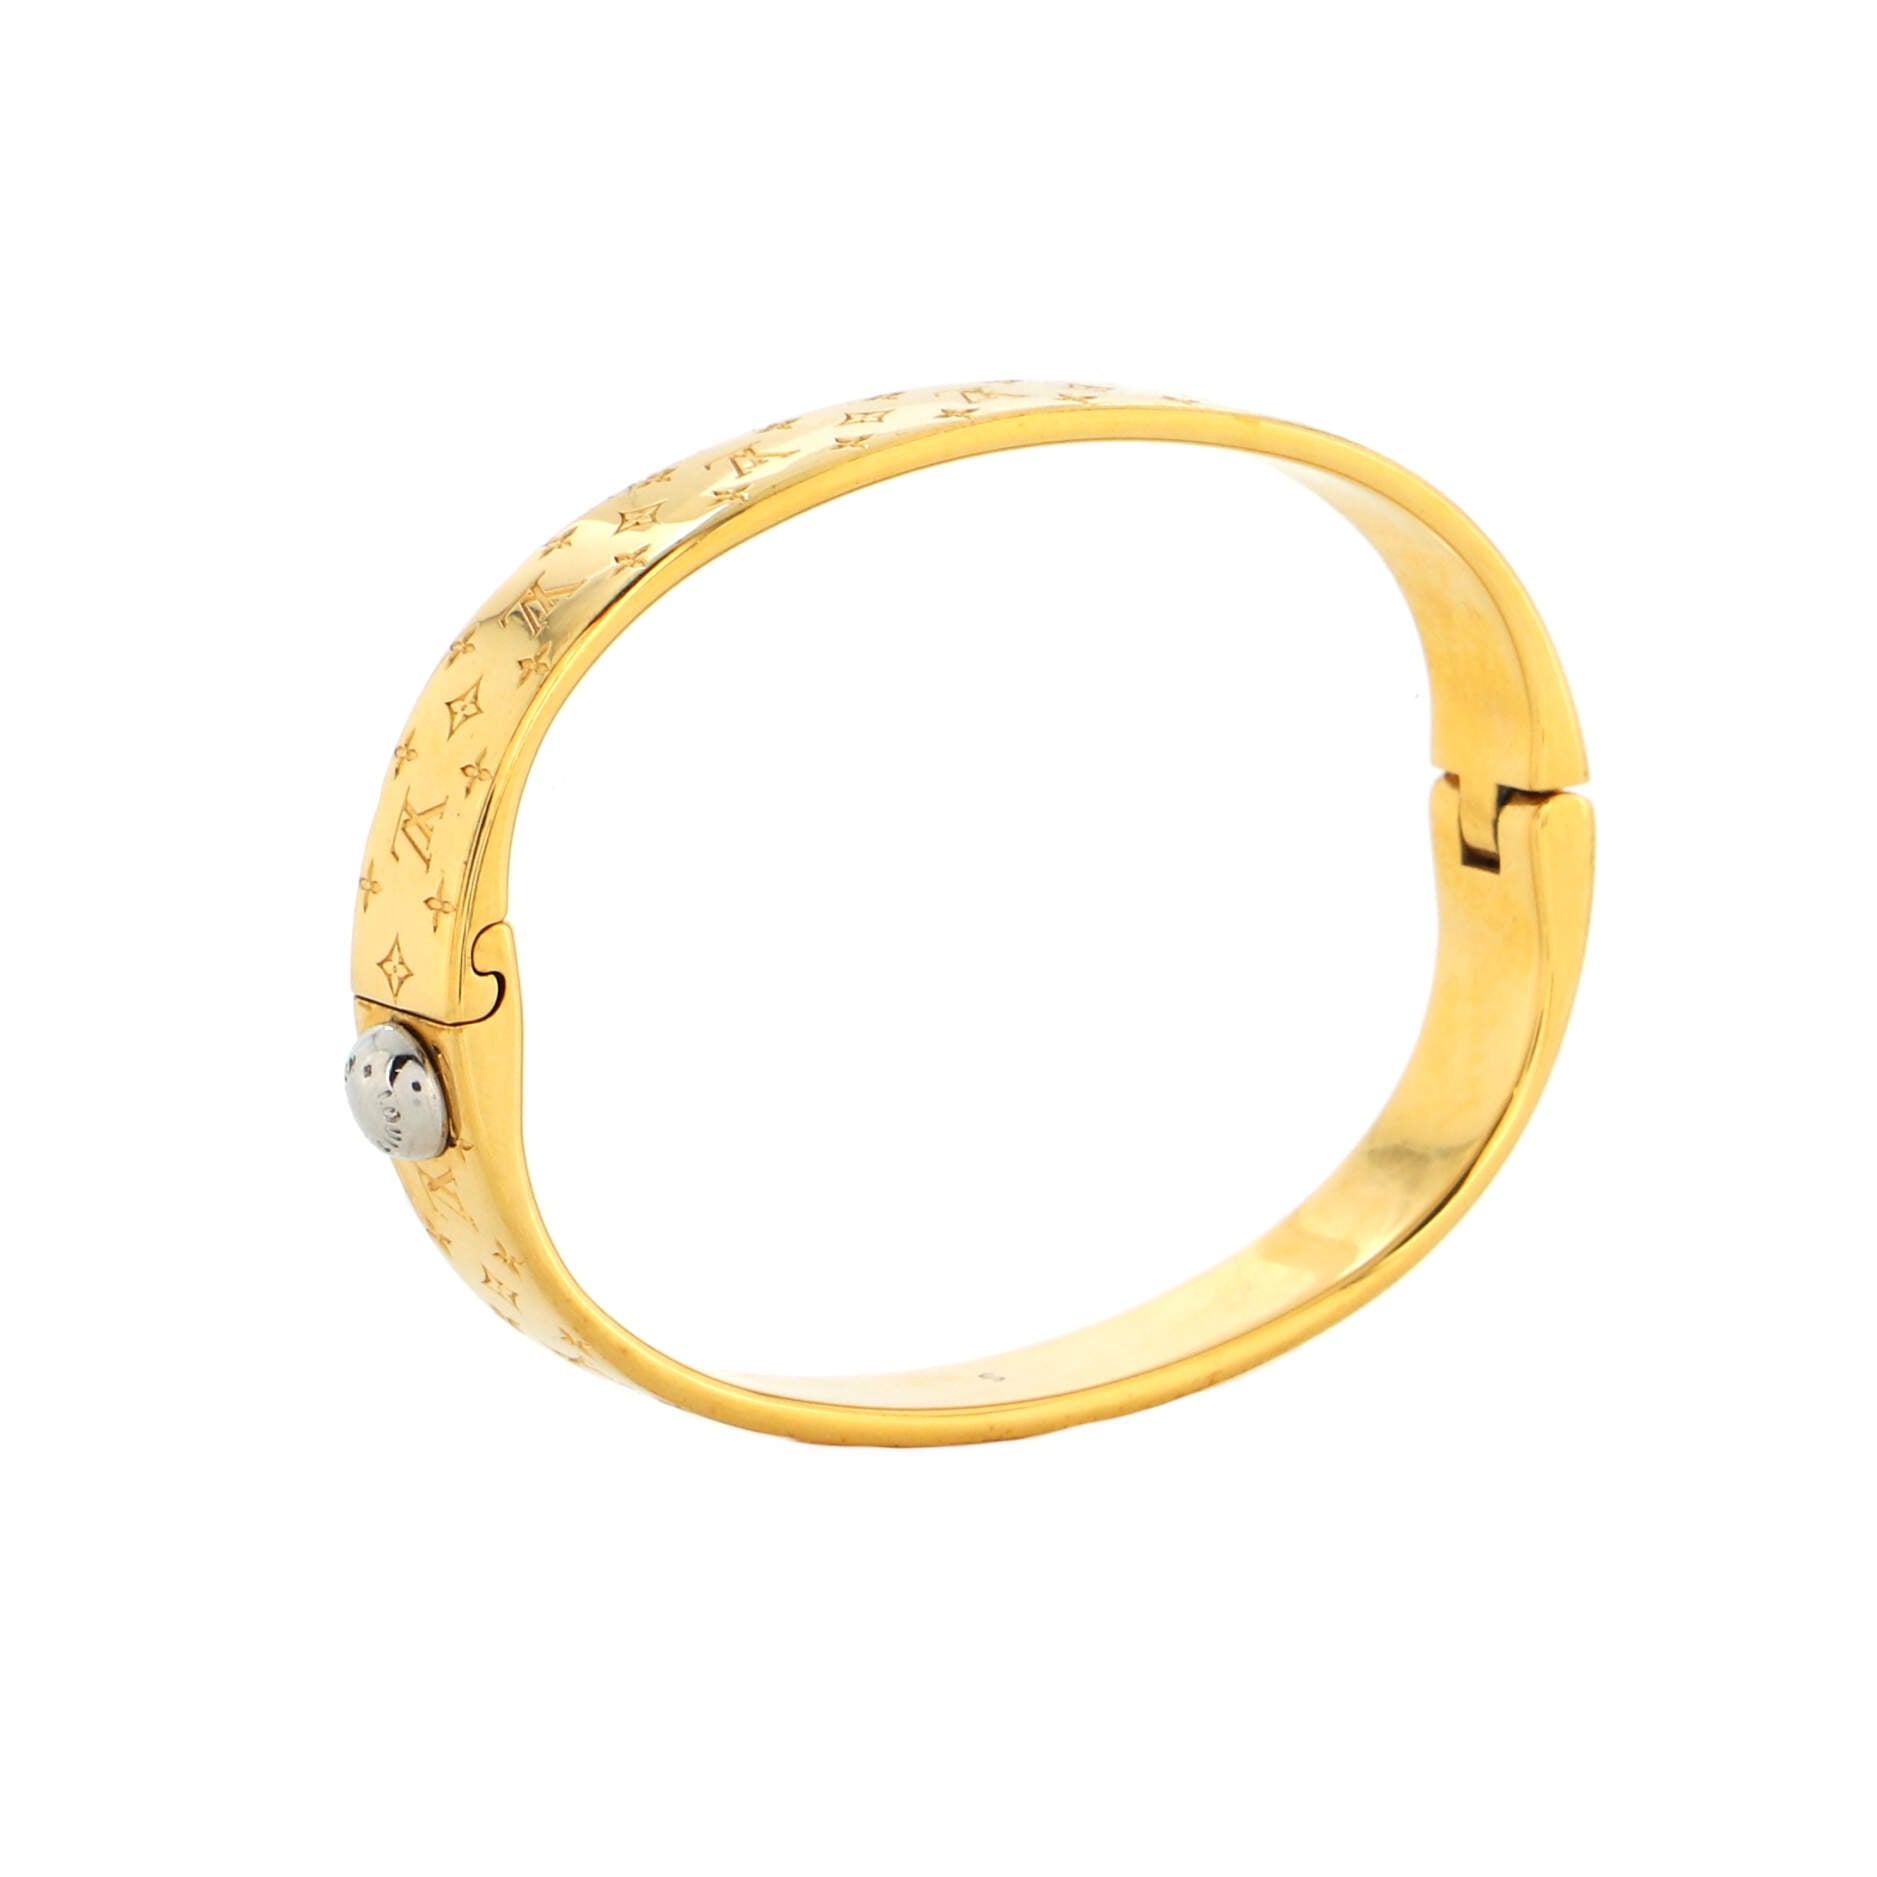 Shop Louis Vuitton 2022 SS Space lv bracelet (M00274, M00273) by  jupiter2021